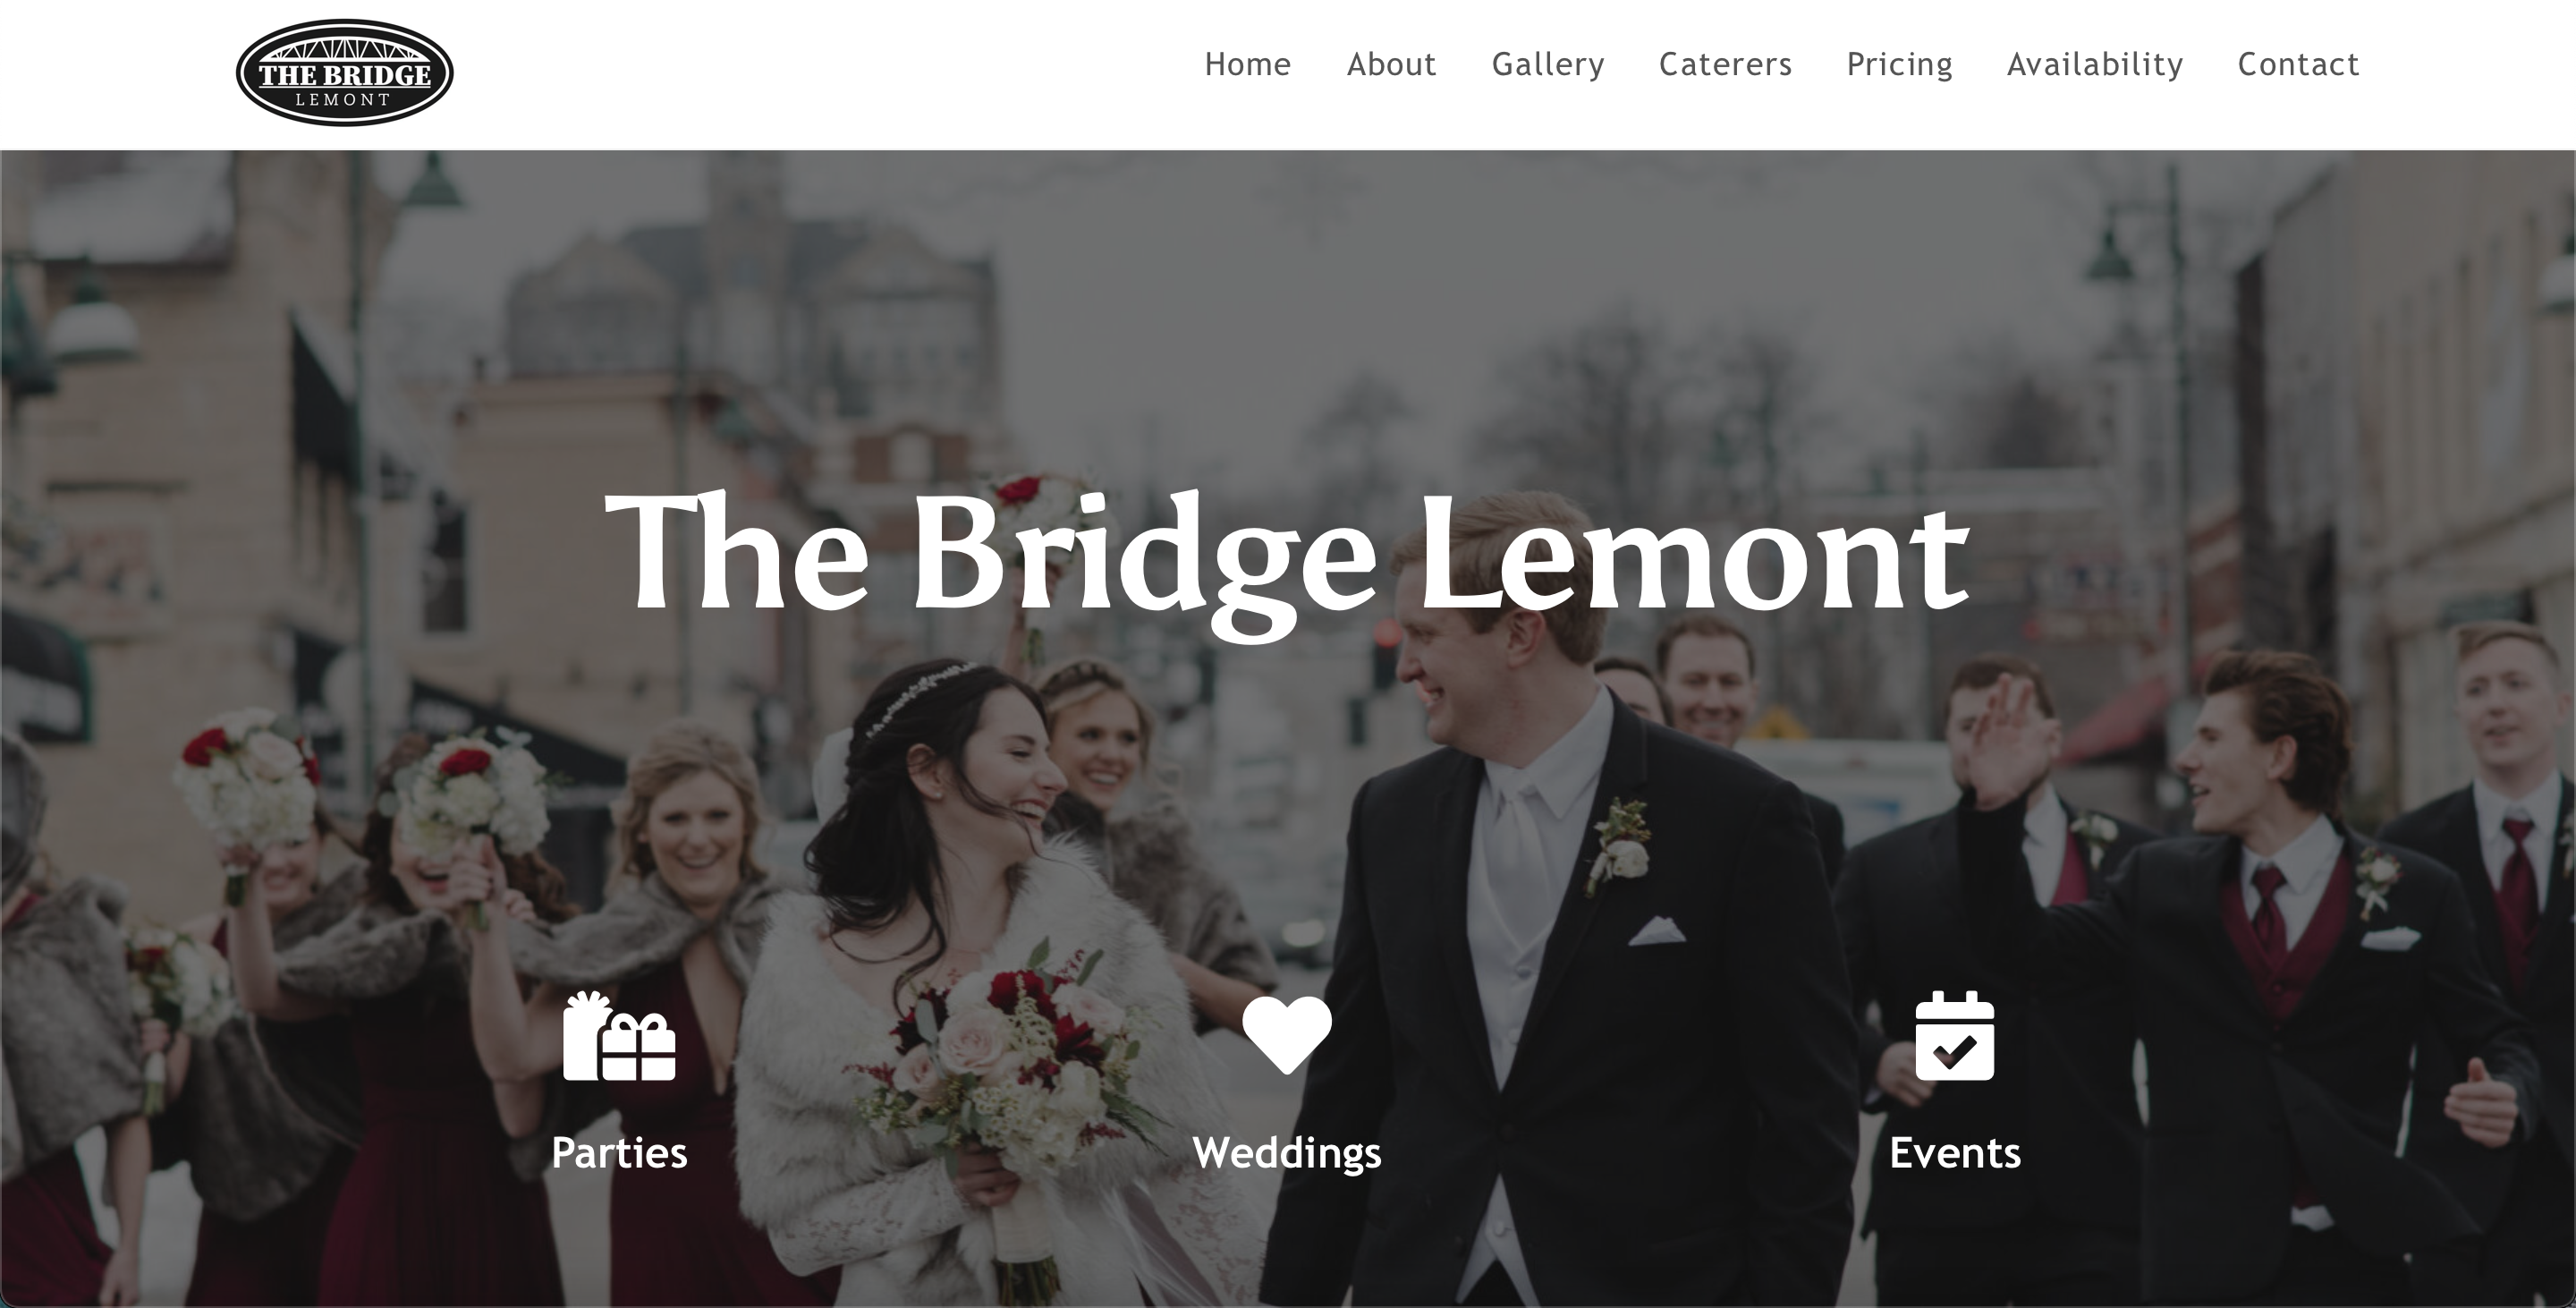 The Bridge Lemont Website